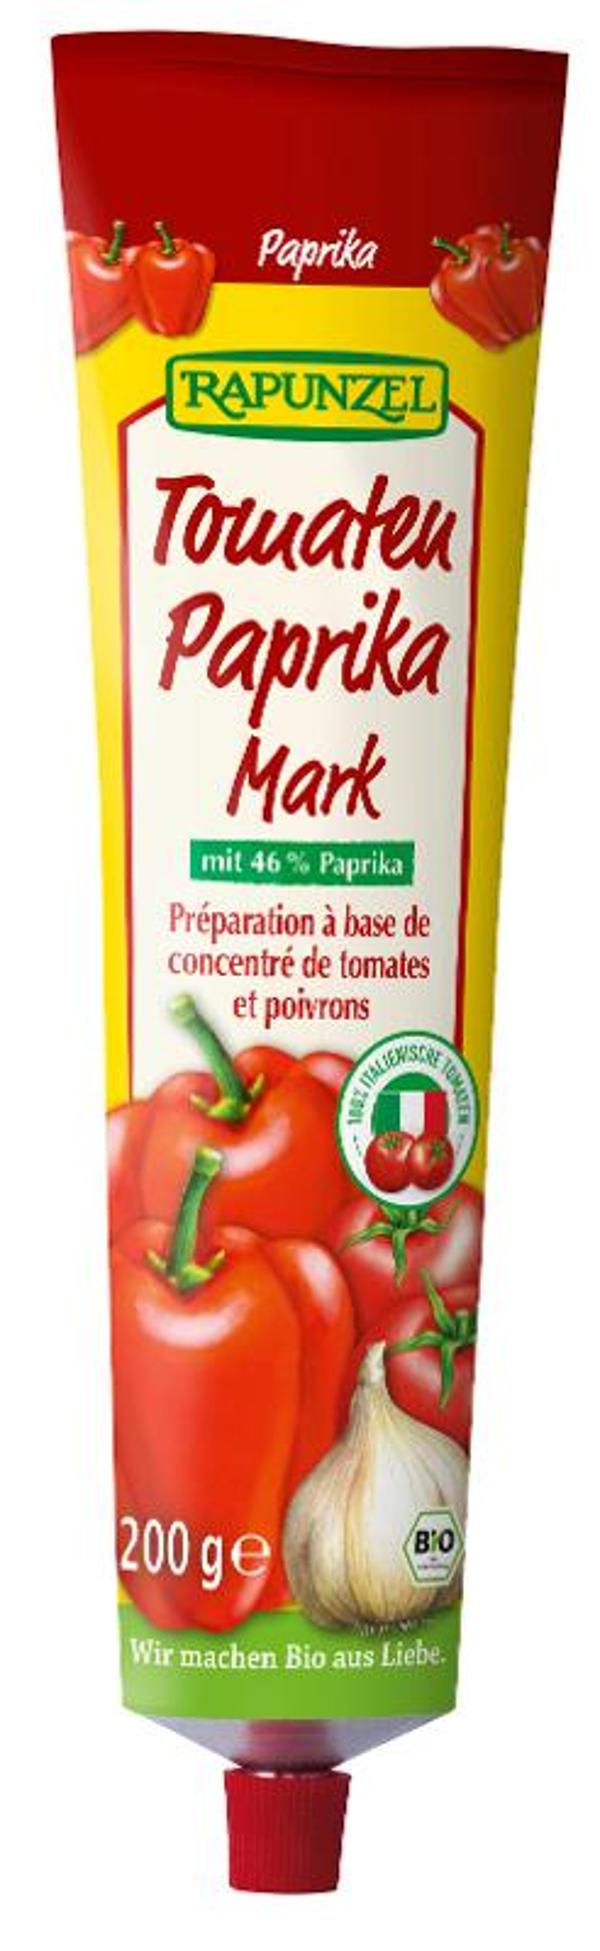 Produktfoto zu Tomaten Paprika Mark in der Tube